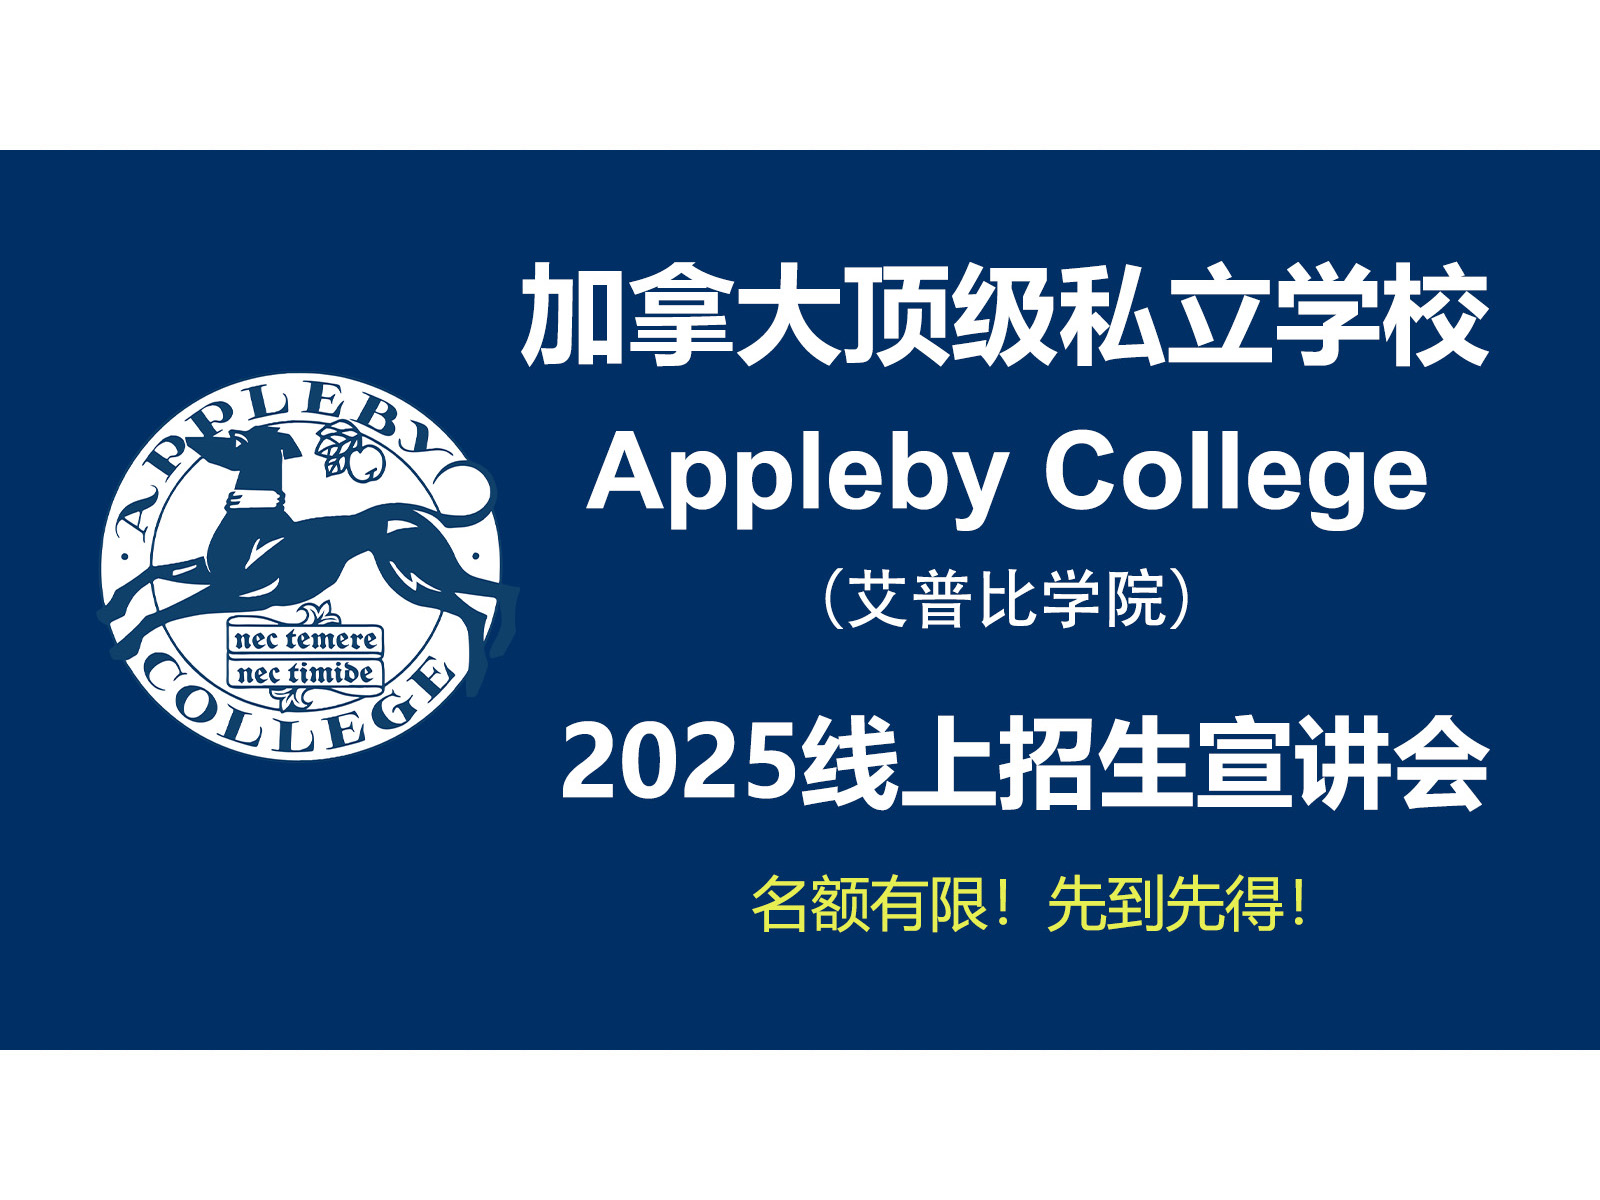 斯隆教育联合加拿大顶级私校Appleby College举办 2025年线上招生宣讲会